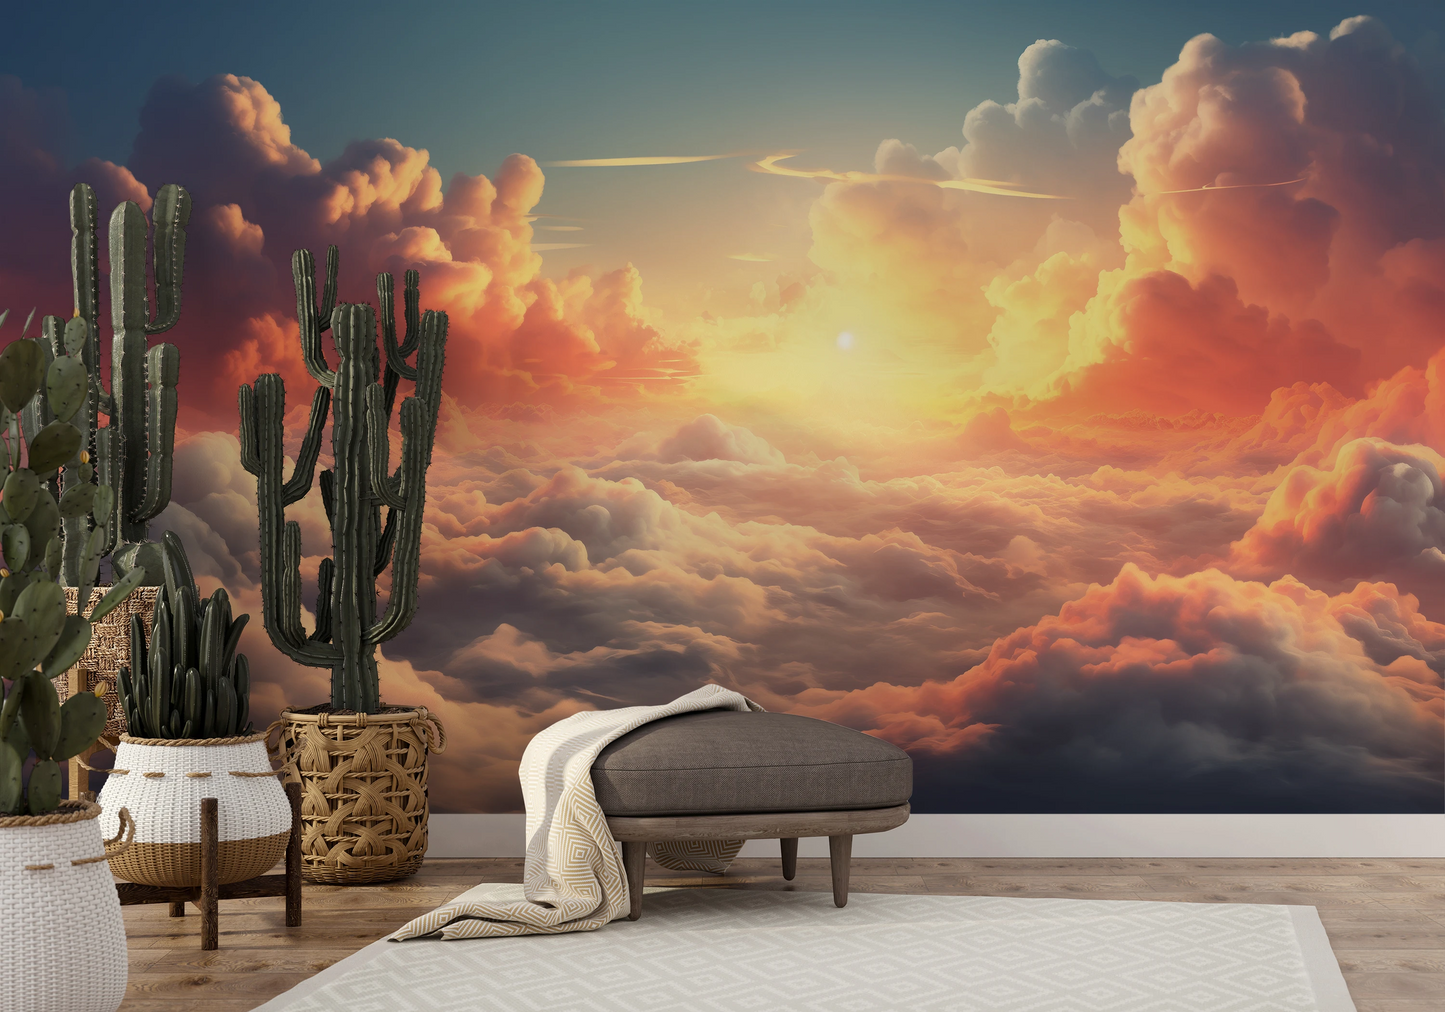 Wzór fototapety malowanej o nazwie Sunset Serenade pokazanej w aranżacji wnętrza.